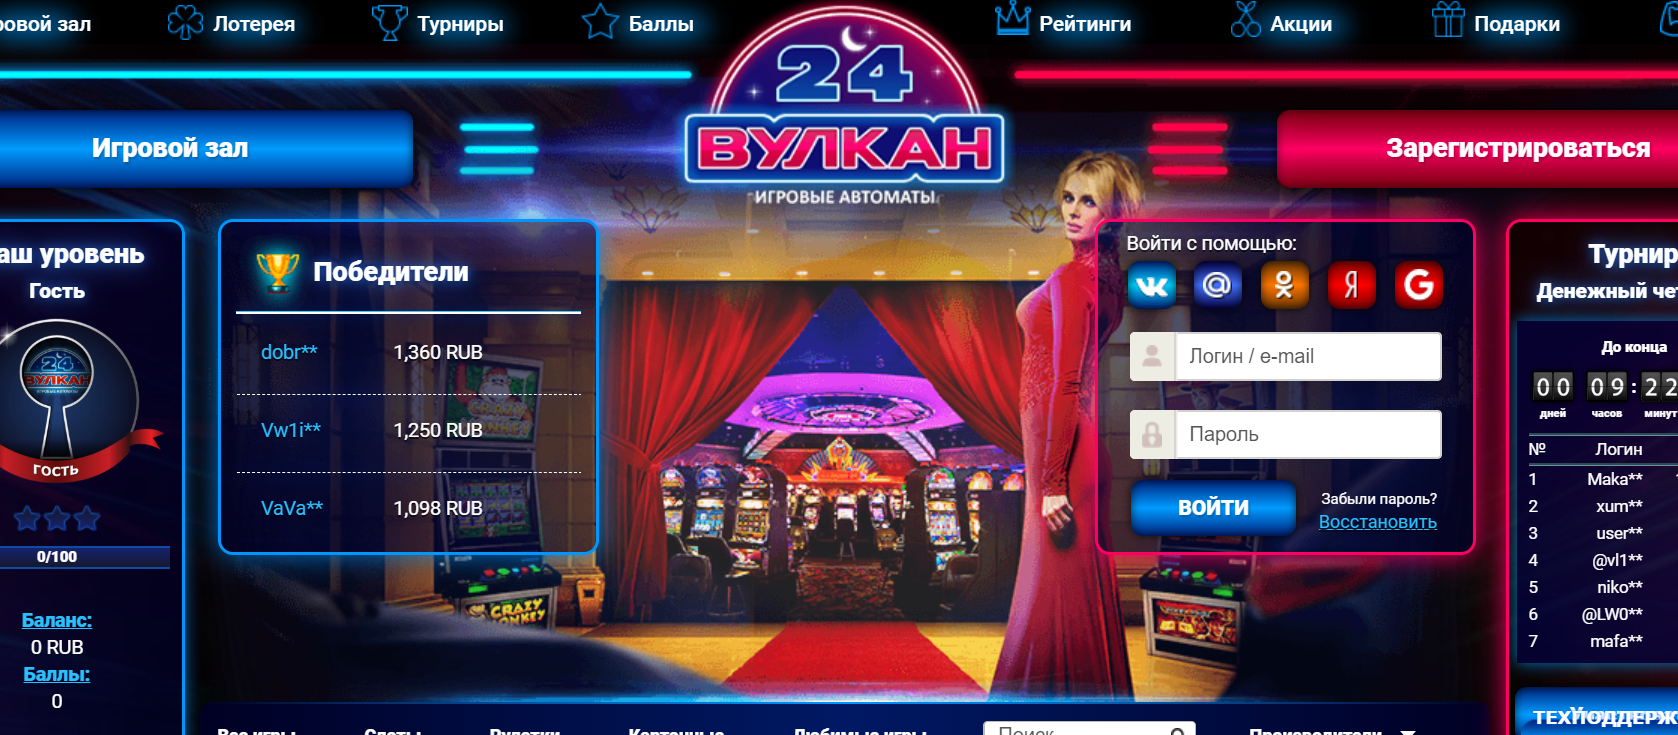 Виртуальное казино Вулкан 24, доступное в любое время